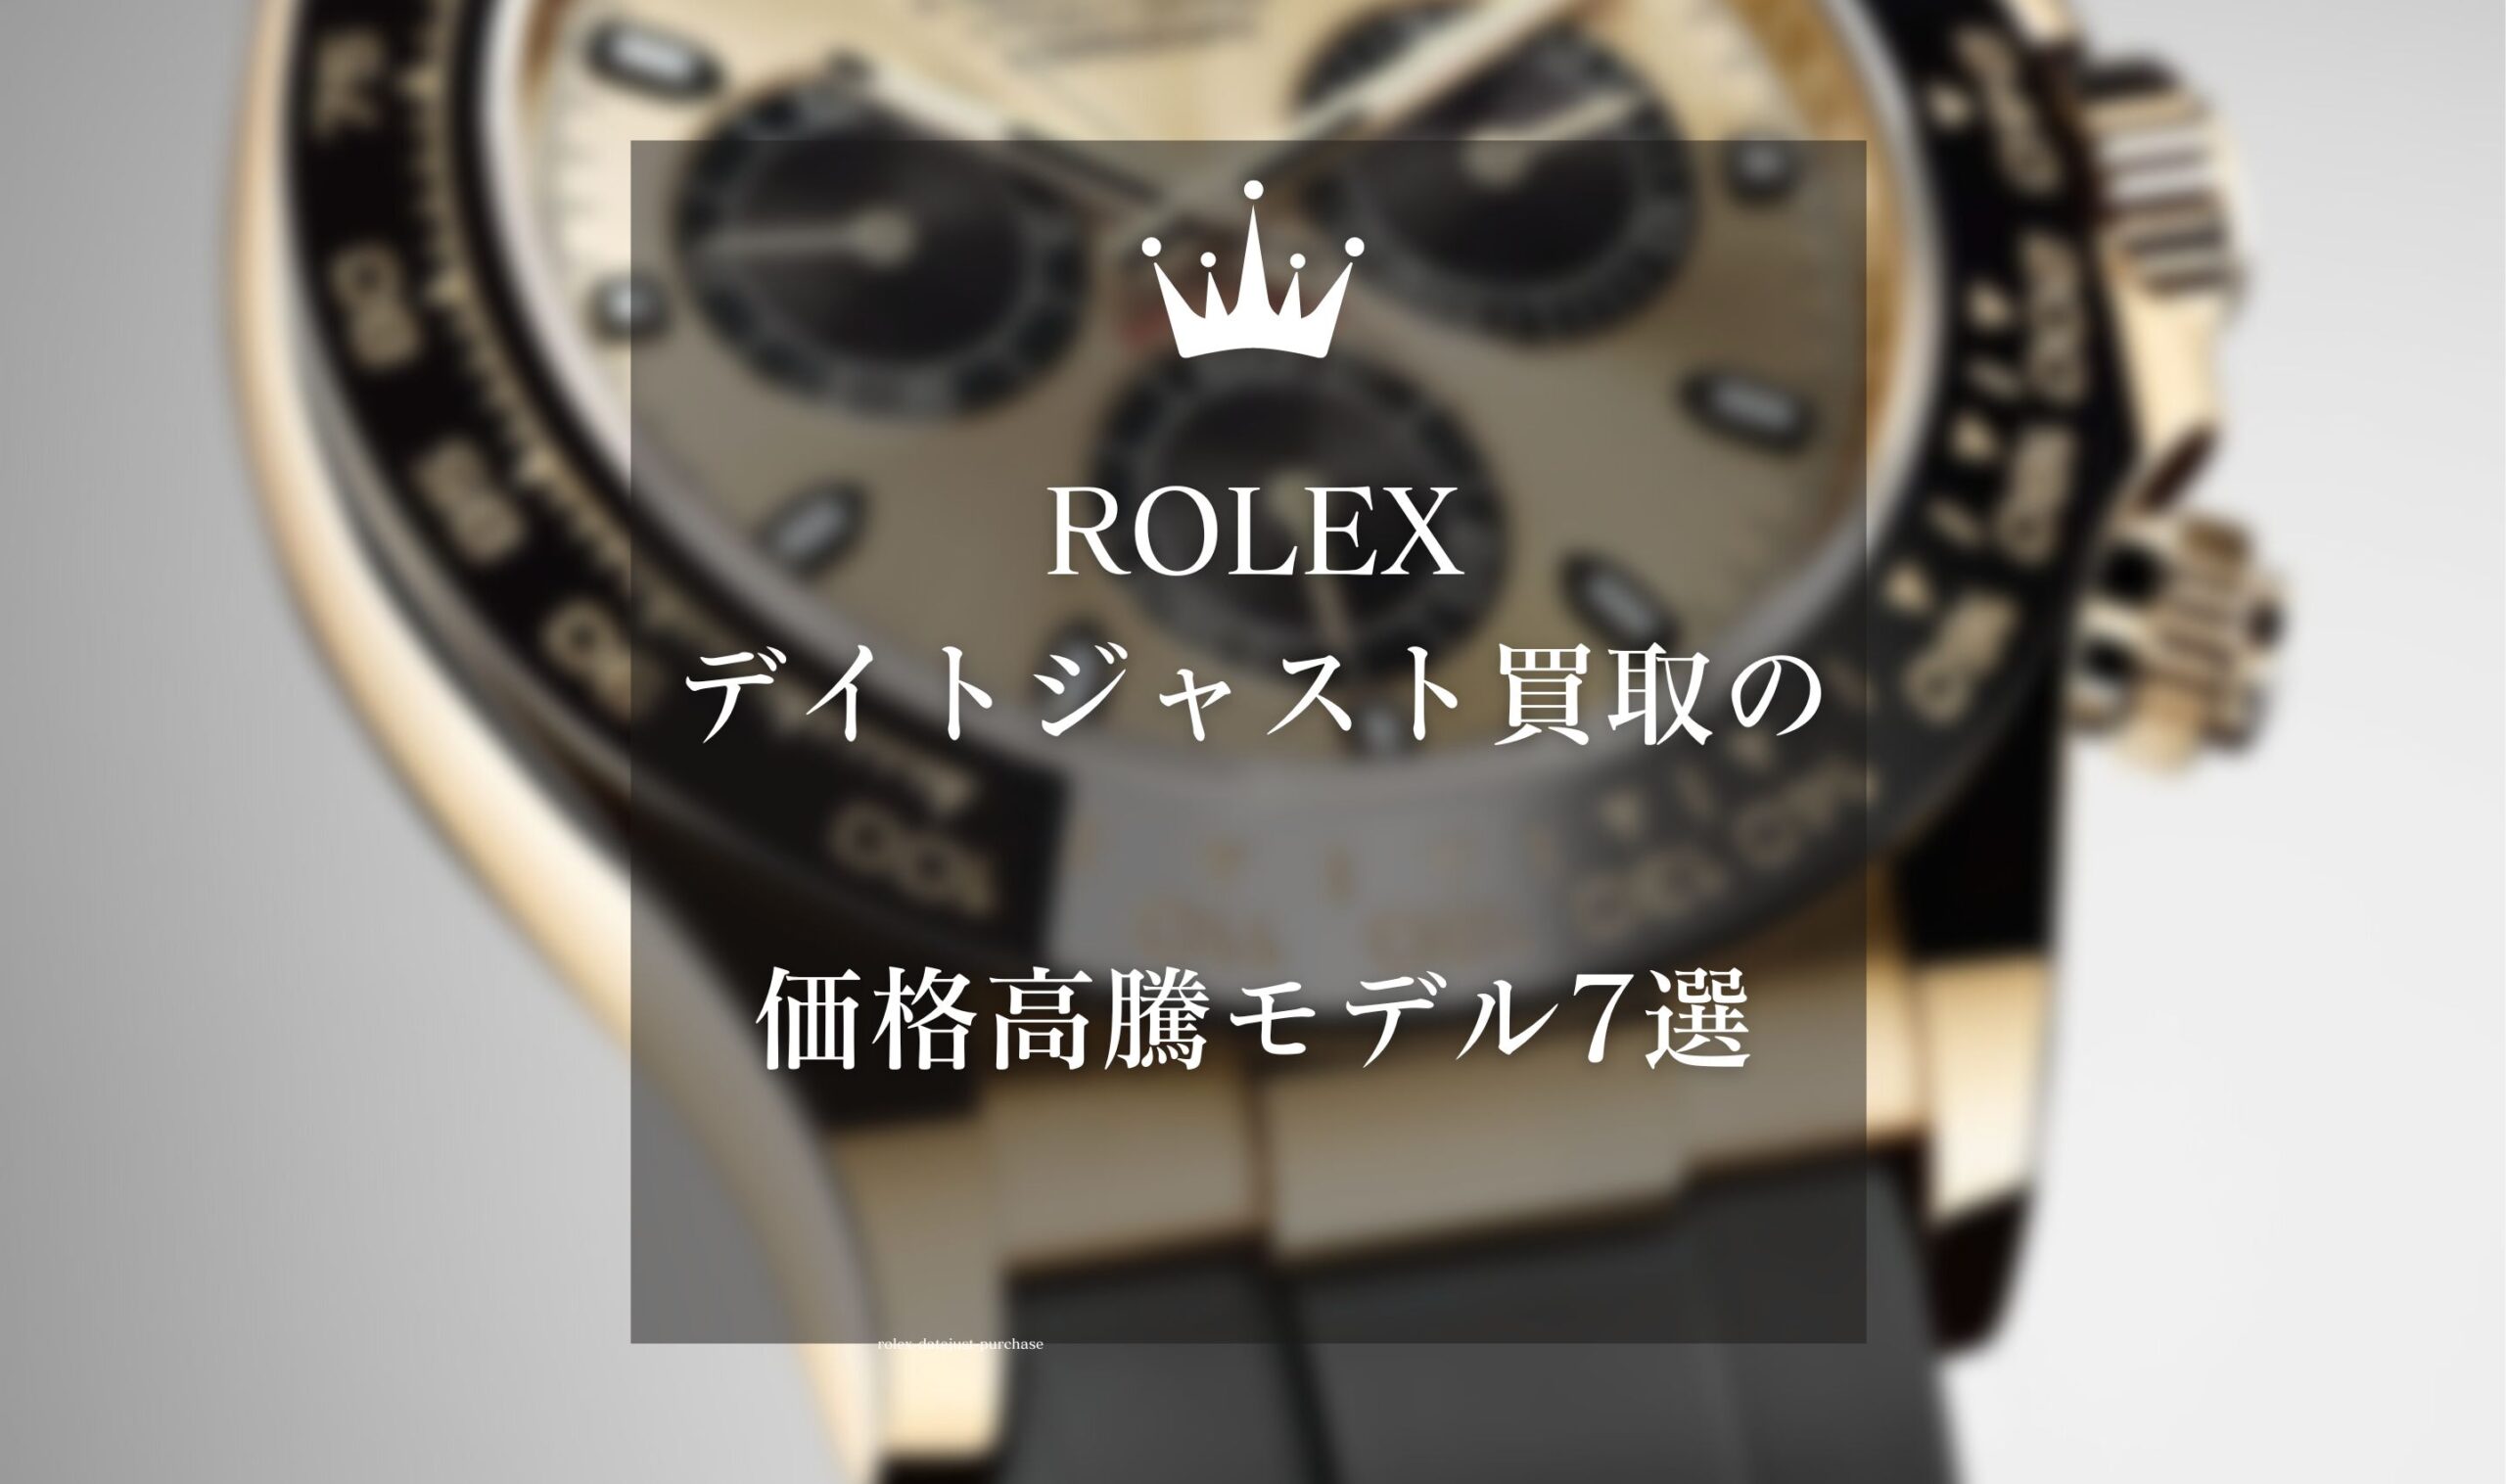 ロレックス(ROLEX)デイトジャスト買取の価格高騰モデル7選